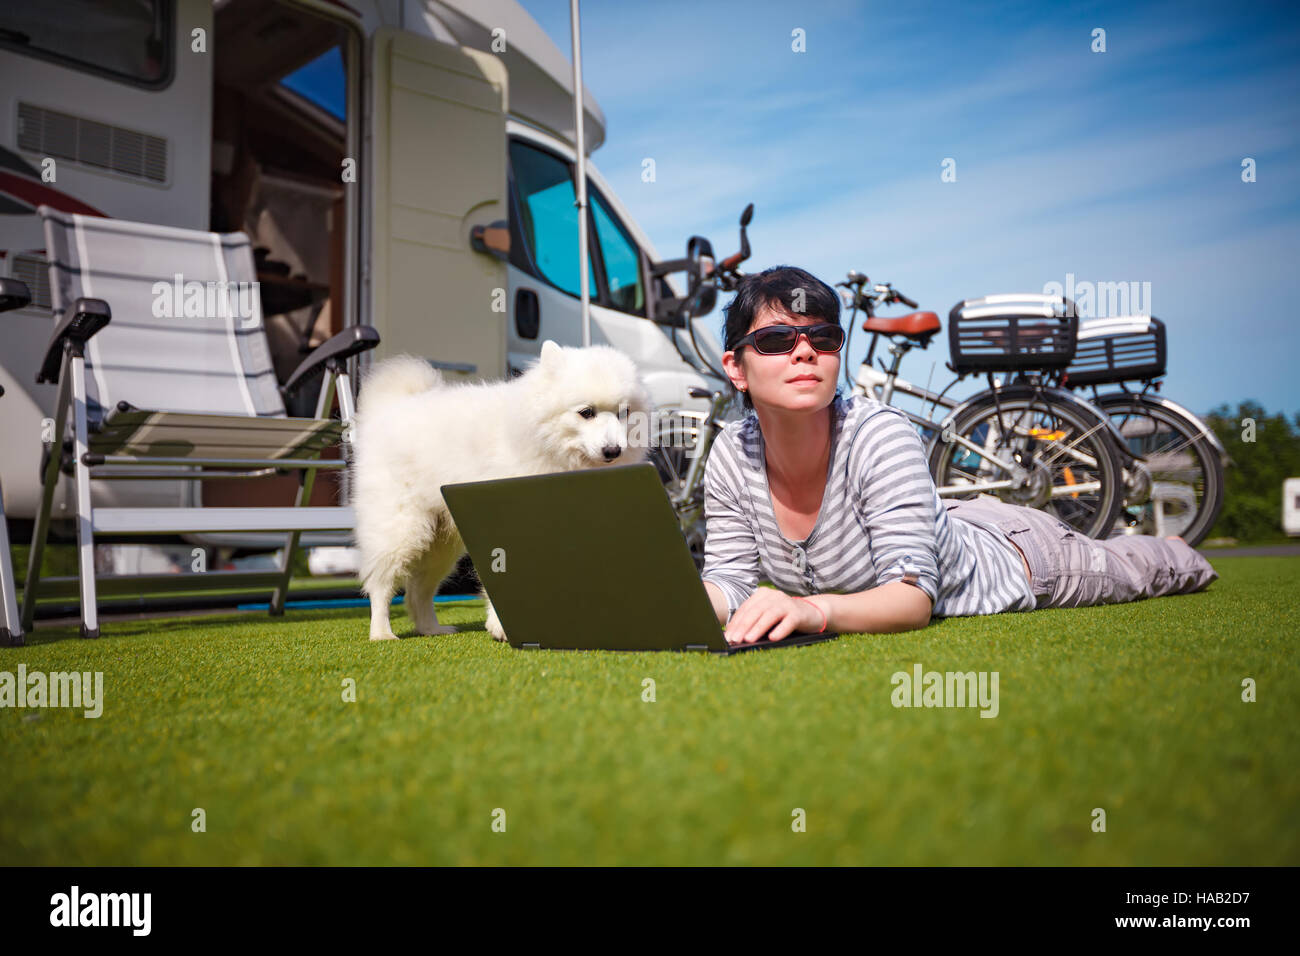 Frau auf dem Rasen mit einem Hund einen Laptop zu betrachten. Wohnwagen Auto Urlaub. Urlaub mit der Familie reisen, Urlaub im Wohnmobil Stockfoto